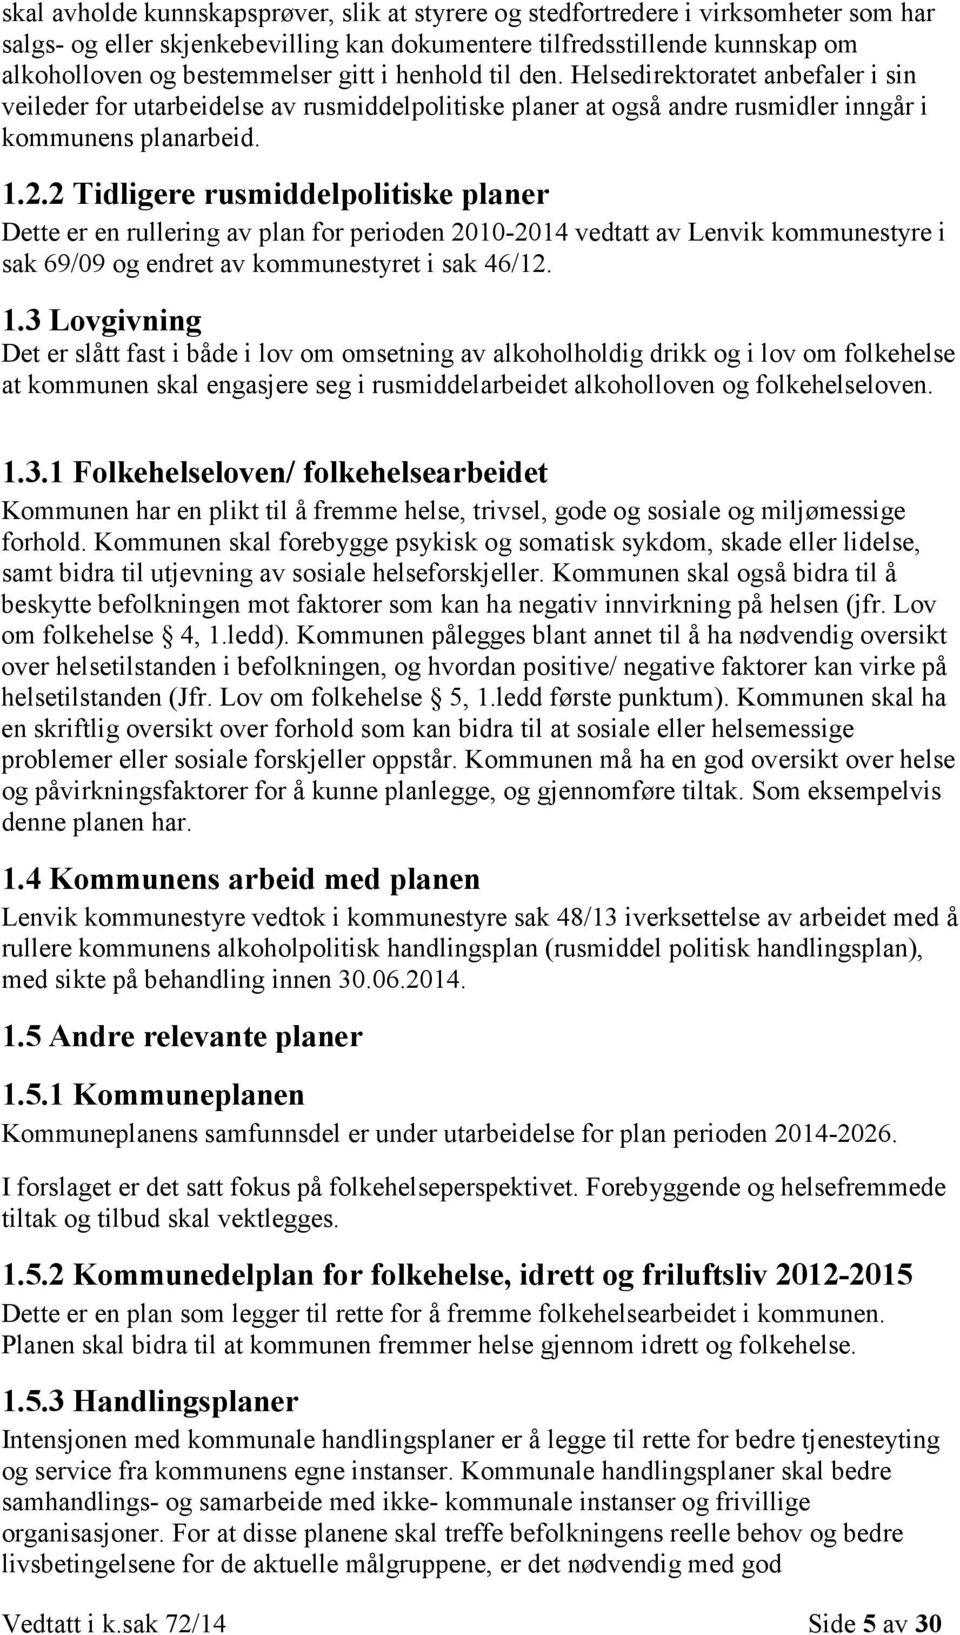 2 Tidligere rusmiddelpolitiske planer Dette er en rullering av plan for perioden 2010-2014 vedtatt av Lenvik kommunestyre i sak 69/09 og endret av kommunestyret i sak 46/12. 1.